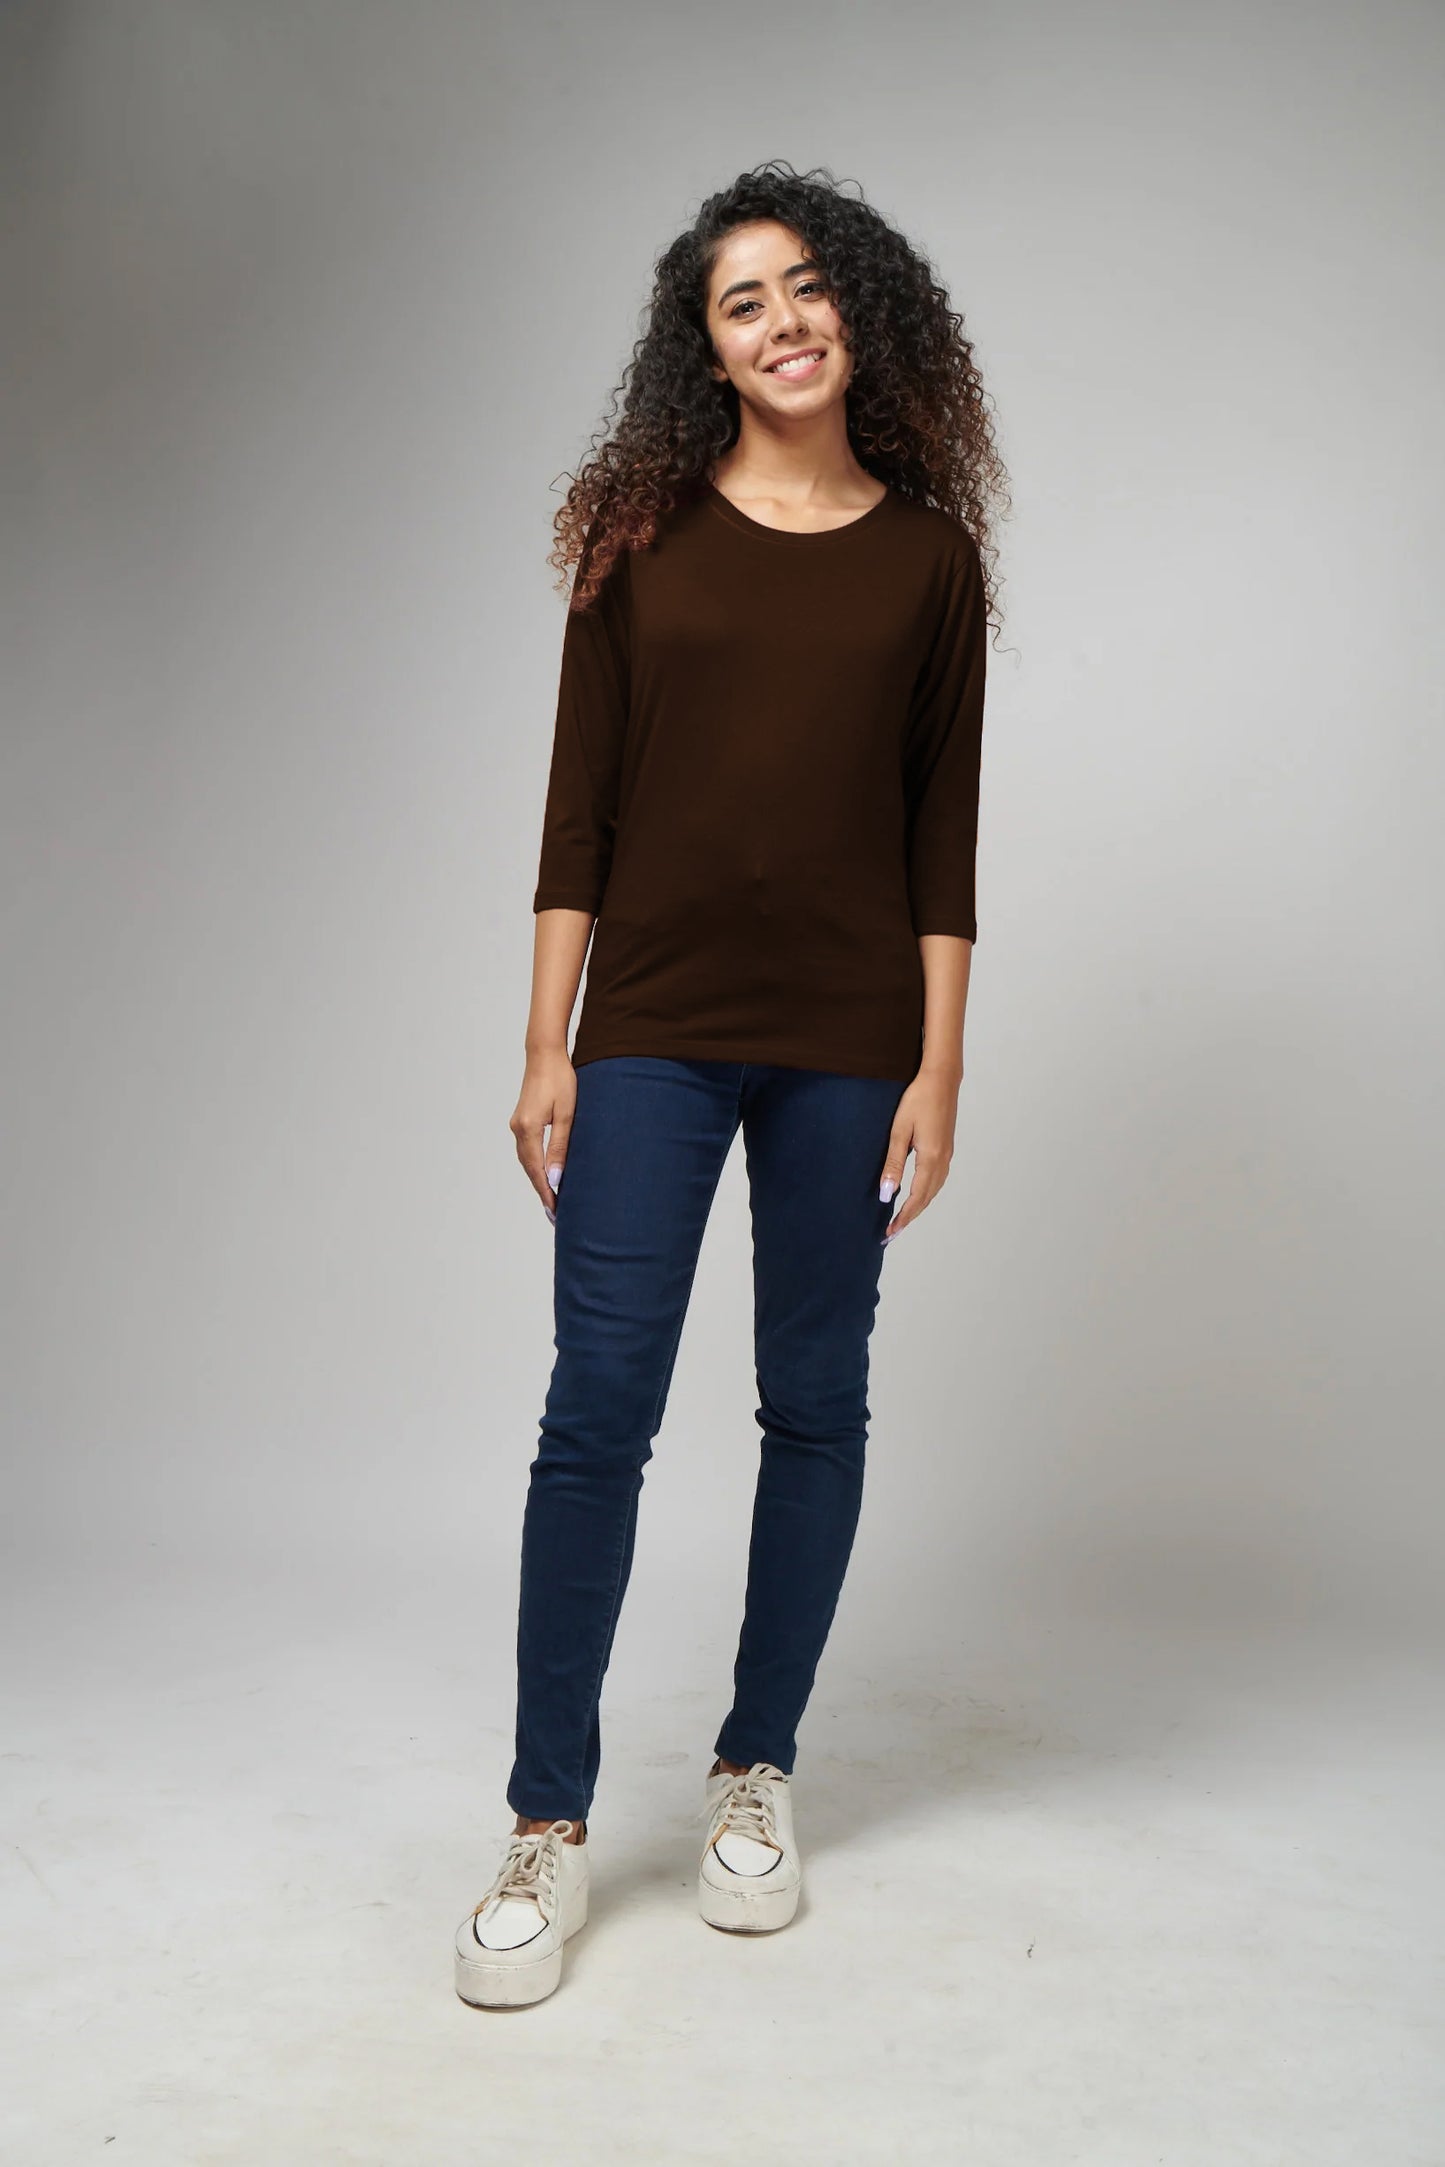 Women's Basic Brown Full Sleeves T-Shirt